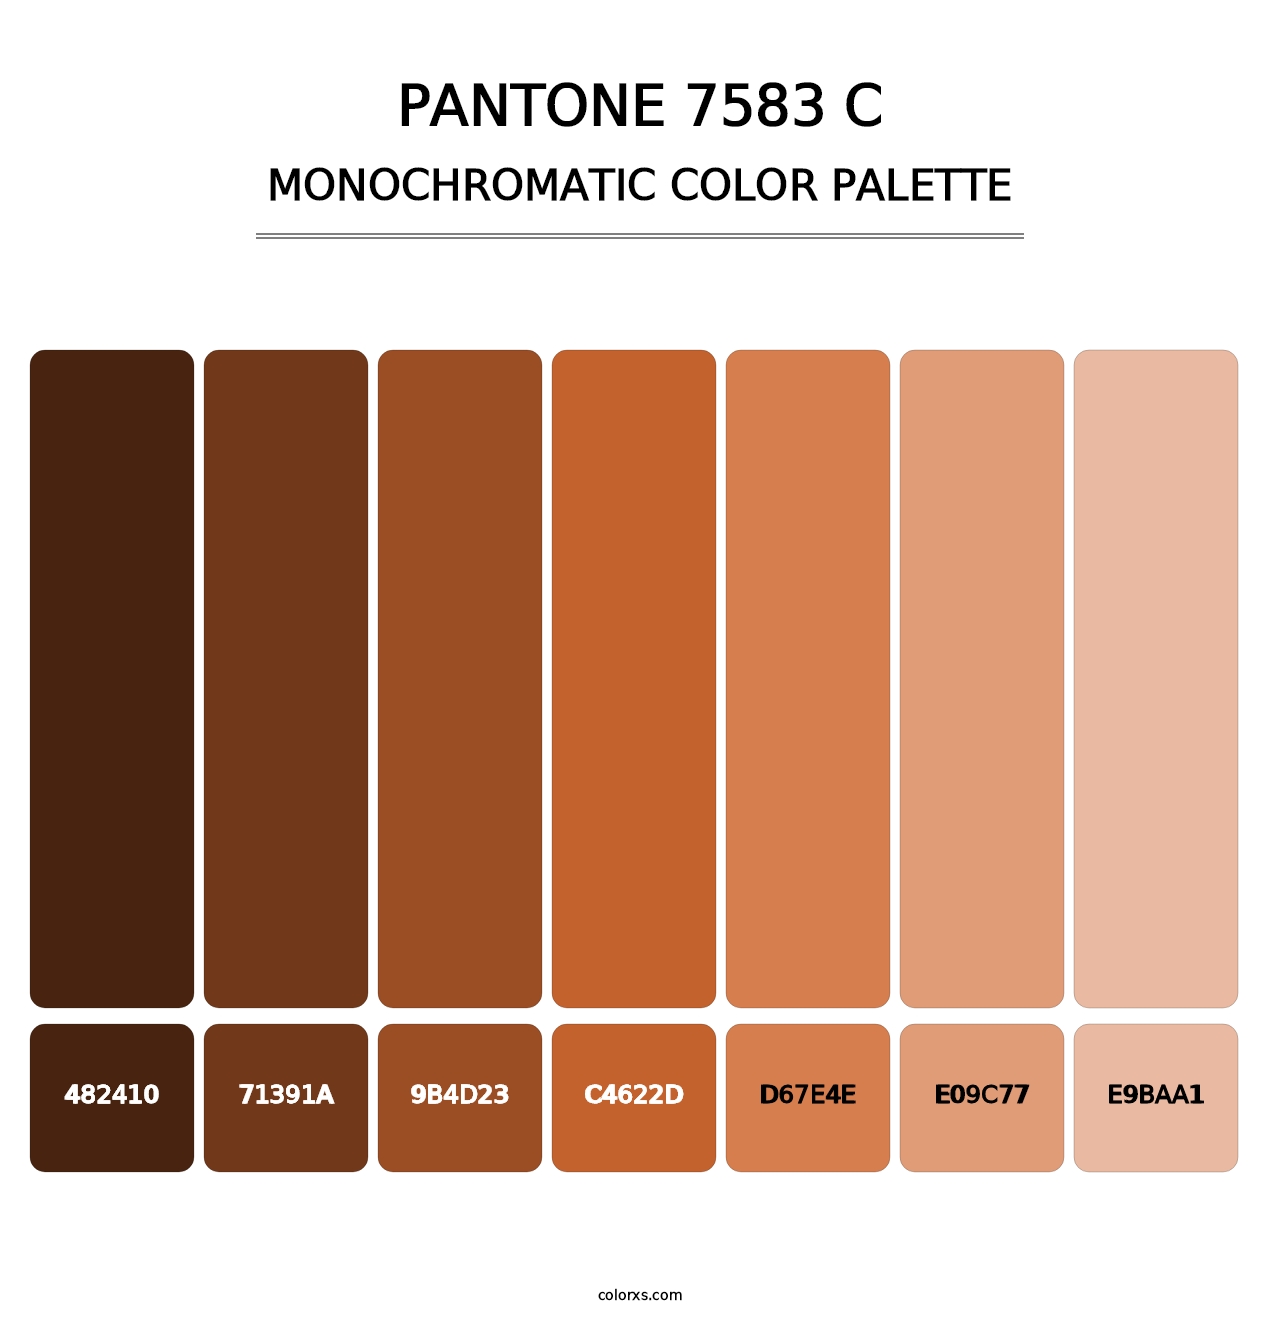 PANTONE 7583 C - Monochromatic Color Palette